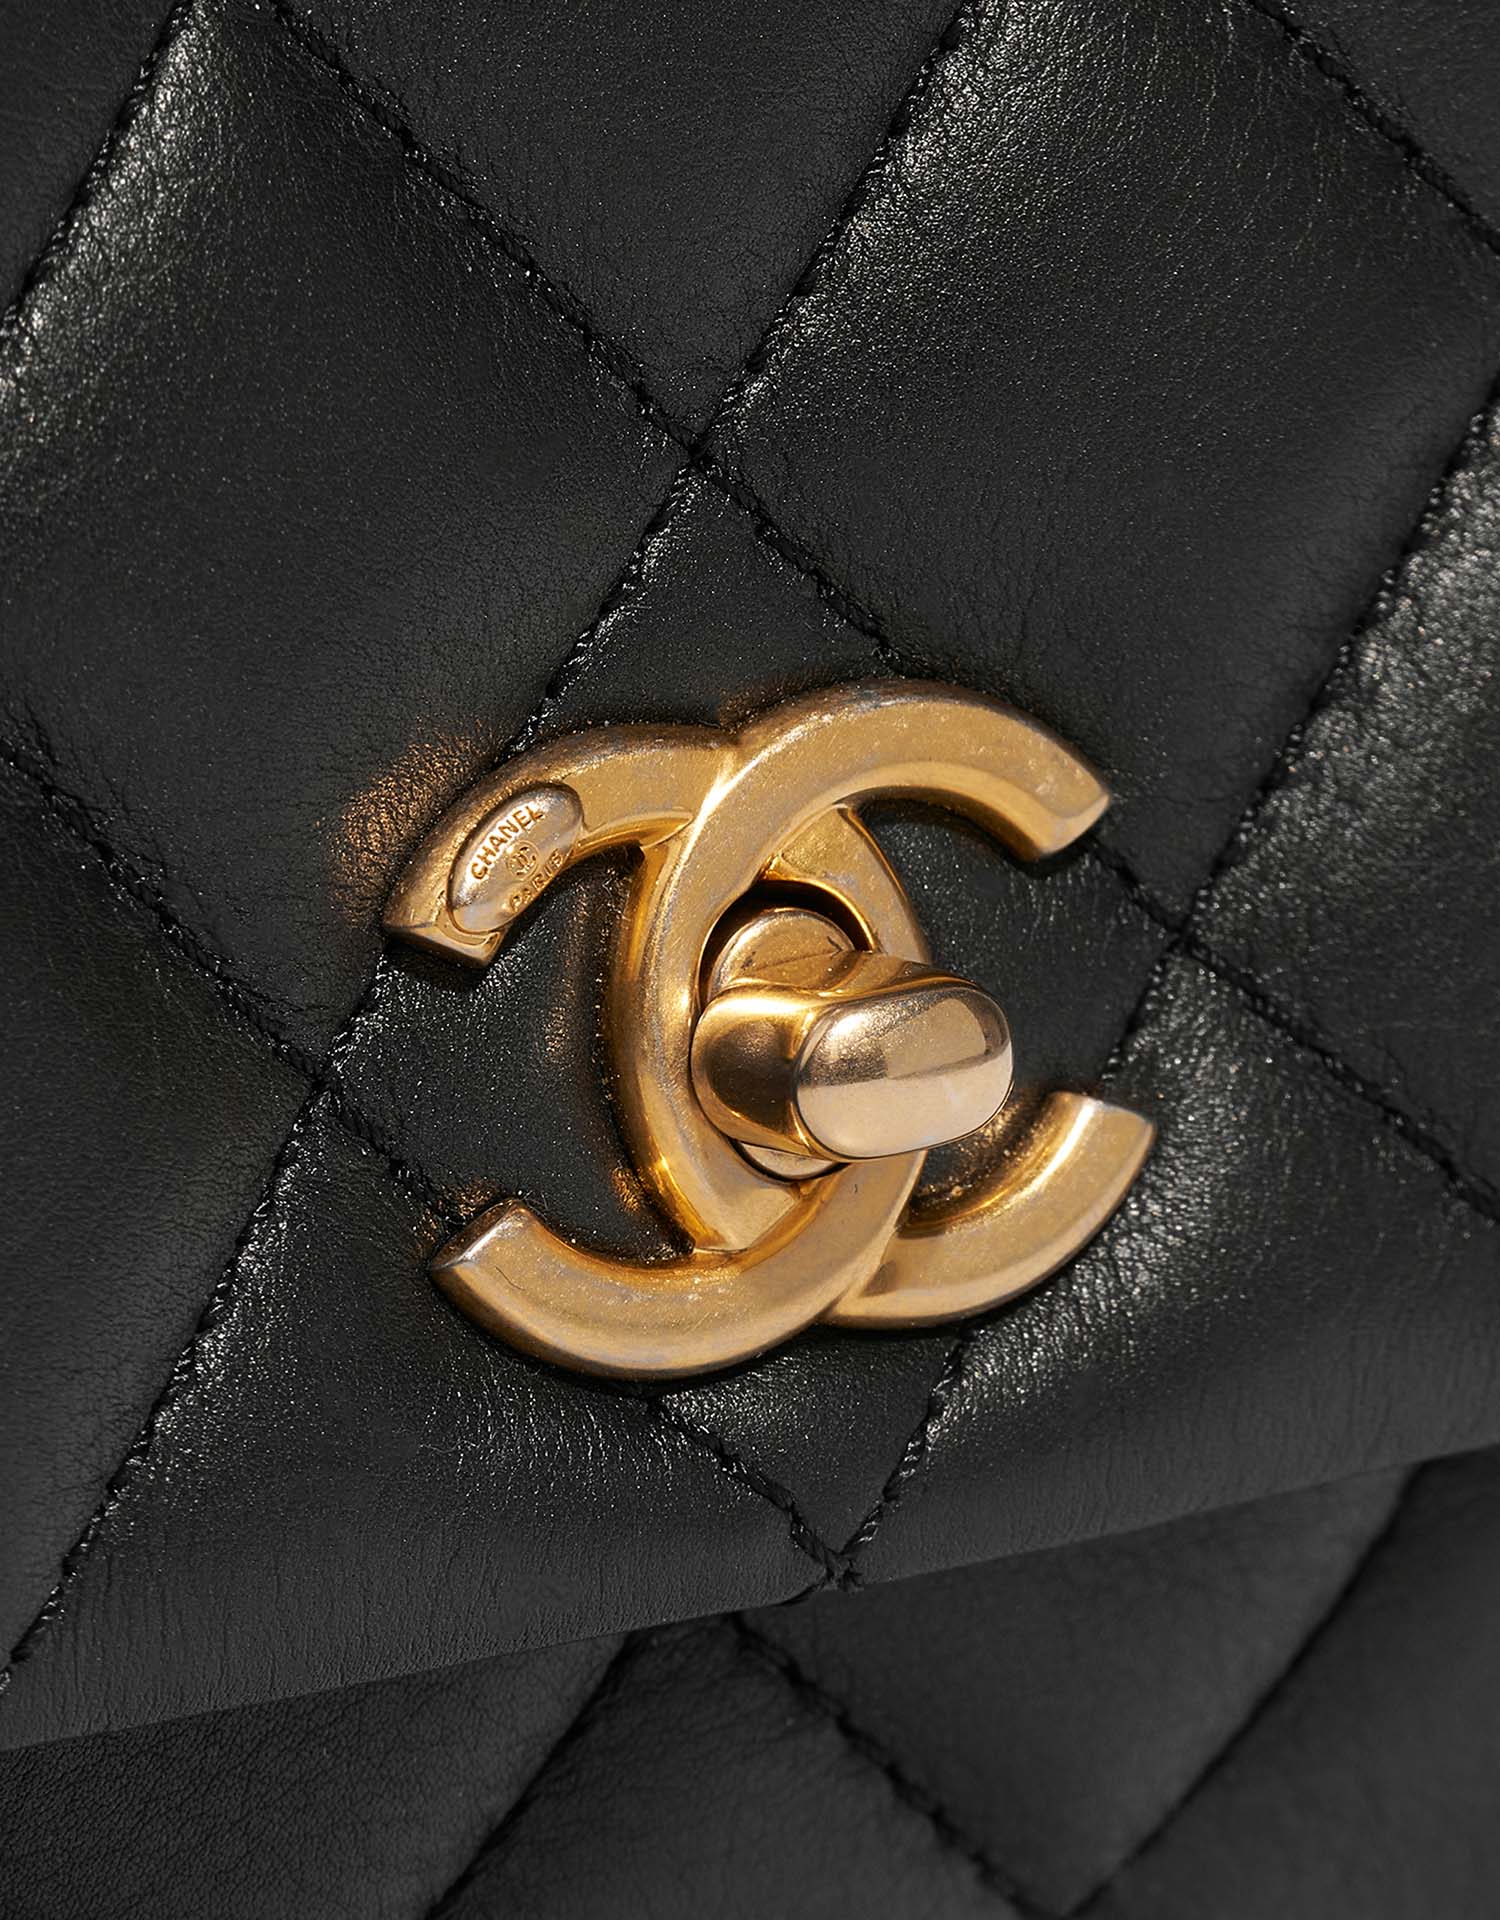 Chanel TimelessHandle Small Black Closing System | Verkaufen Sie Ihre Designer-Tasche auf Saclab.com